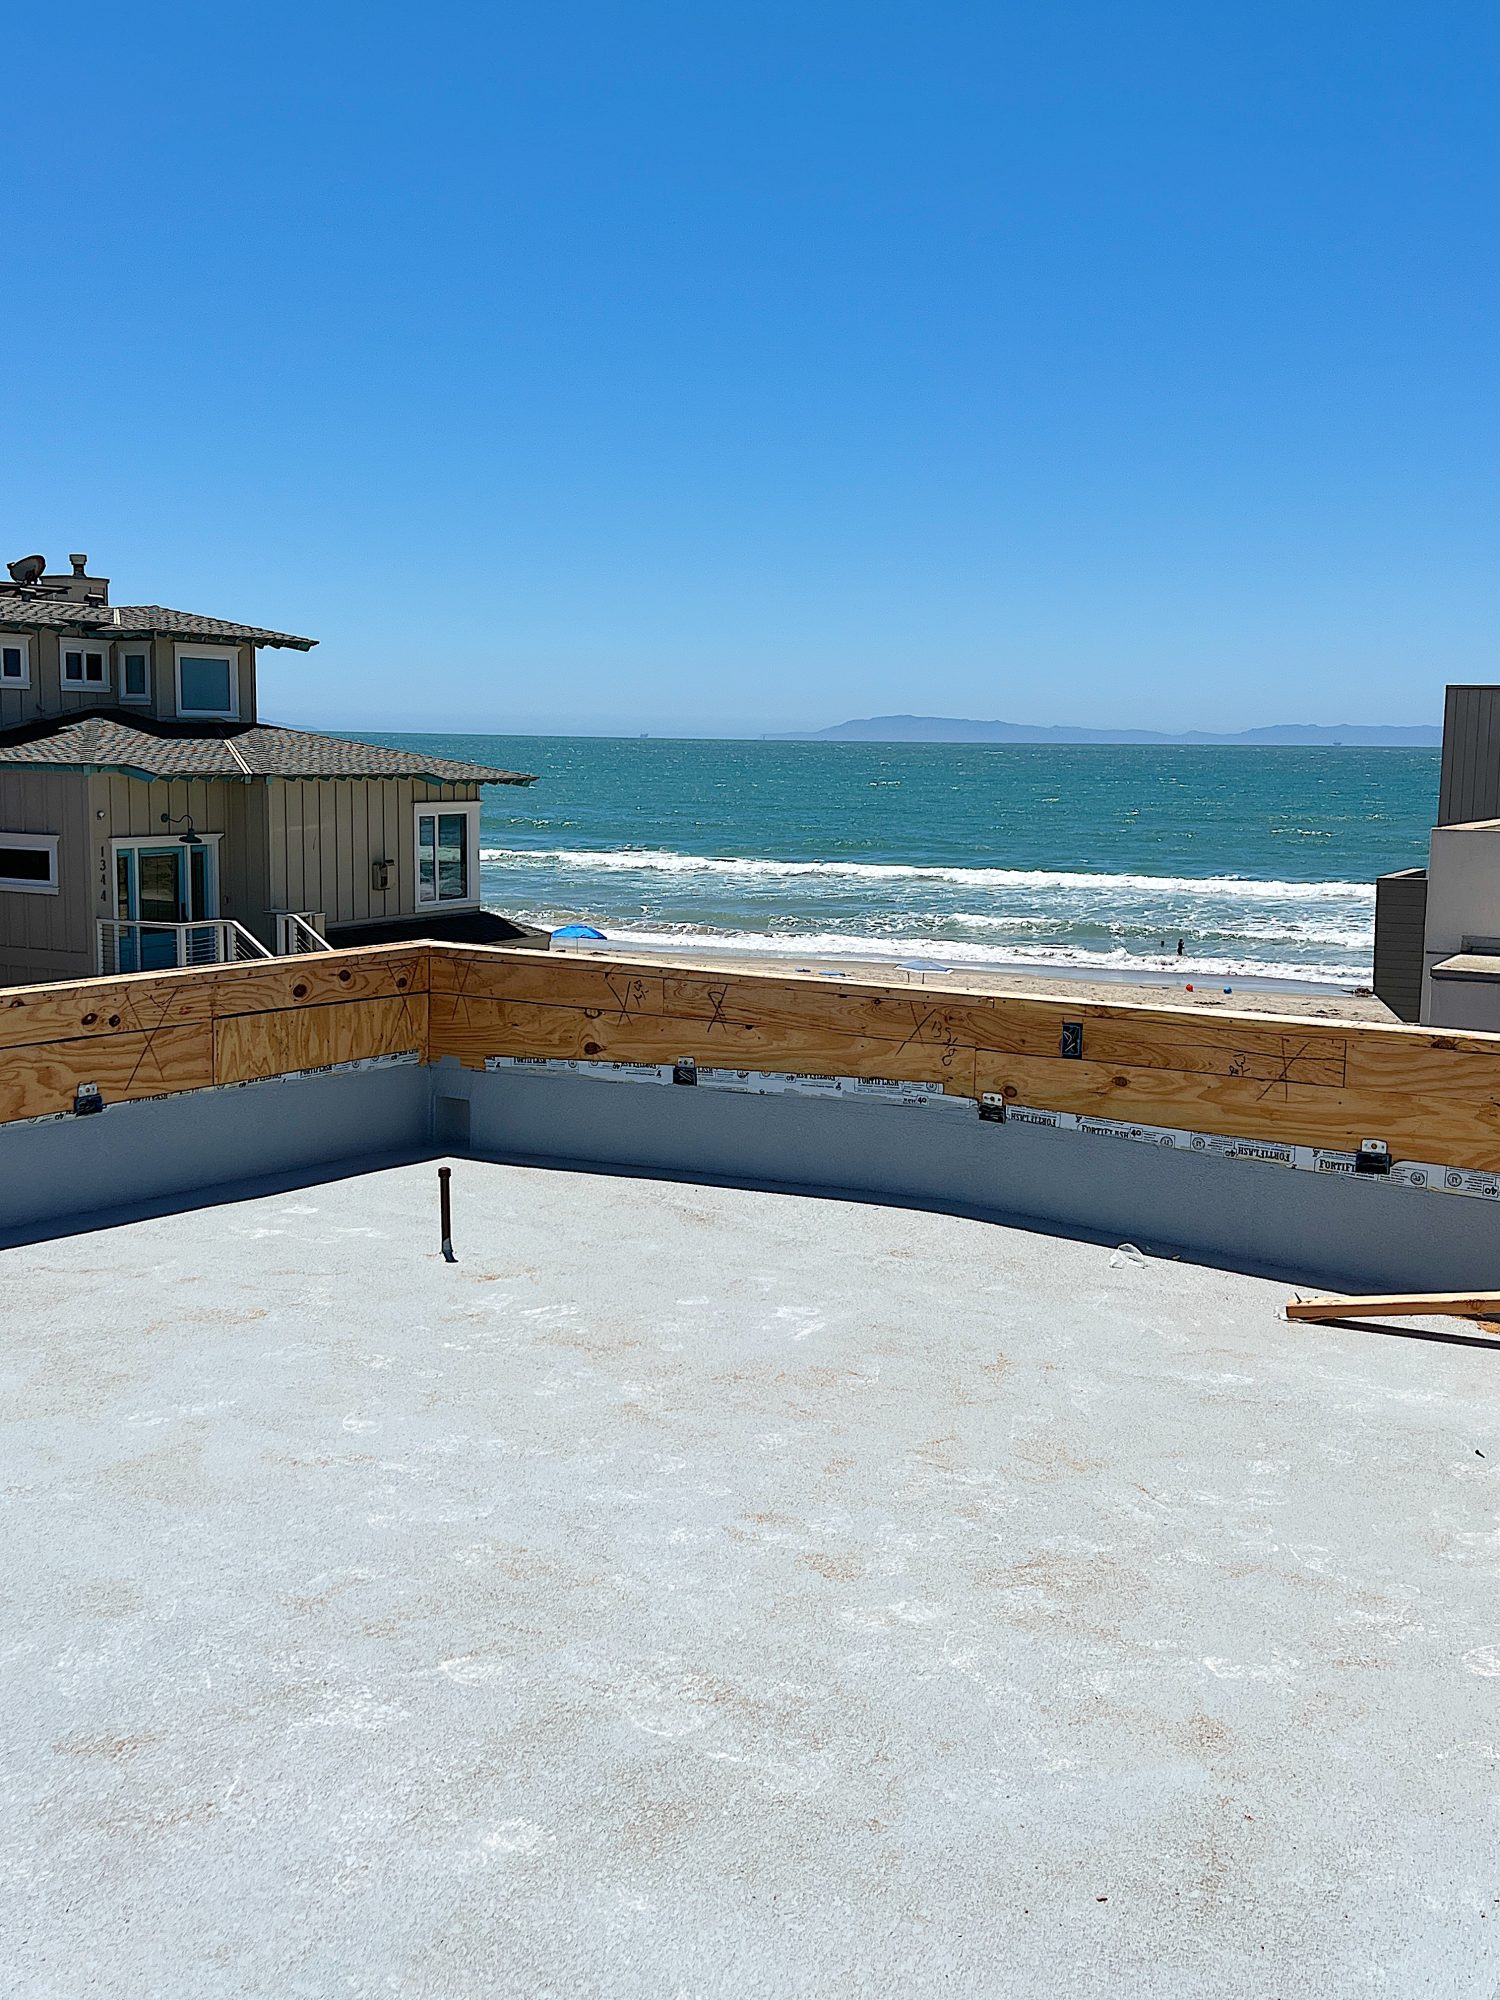 The Beach House New Deck